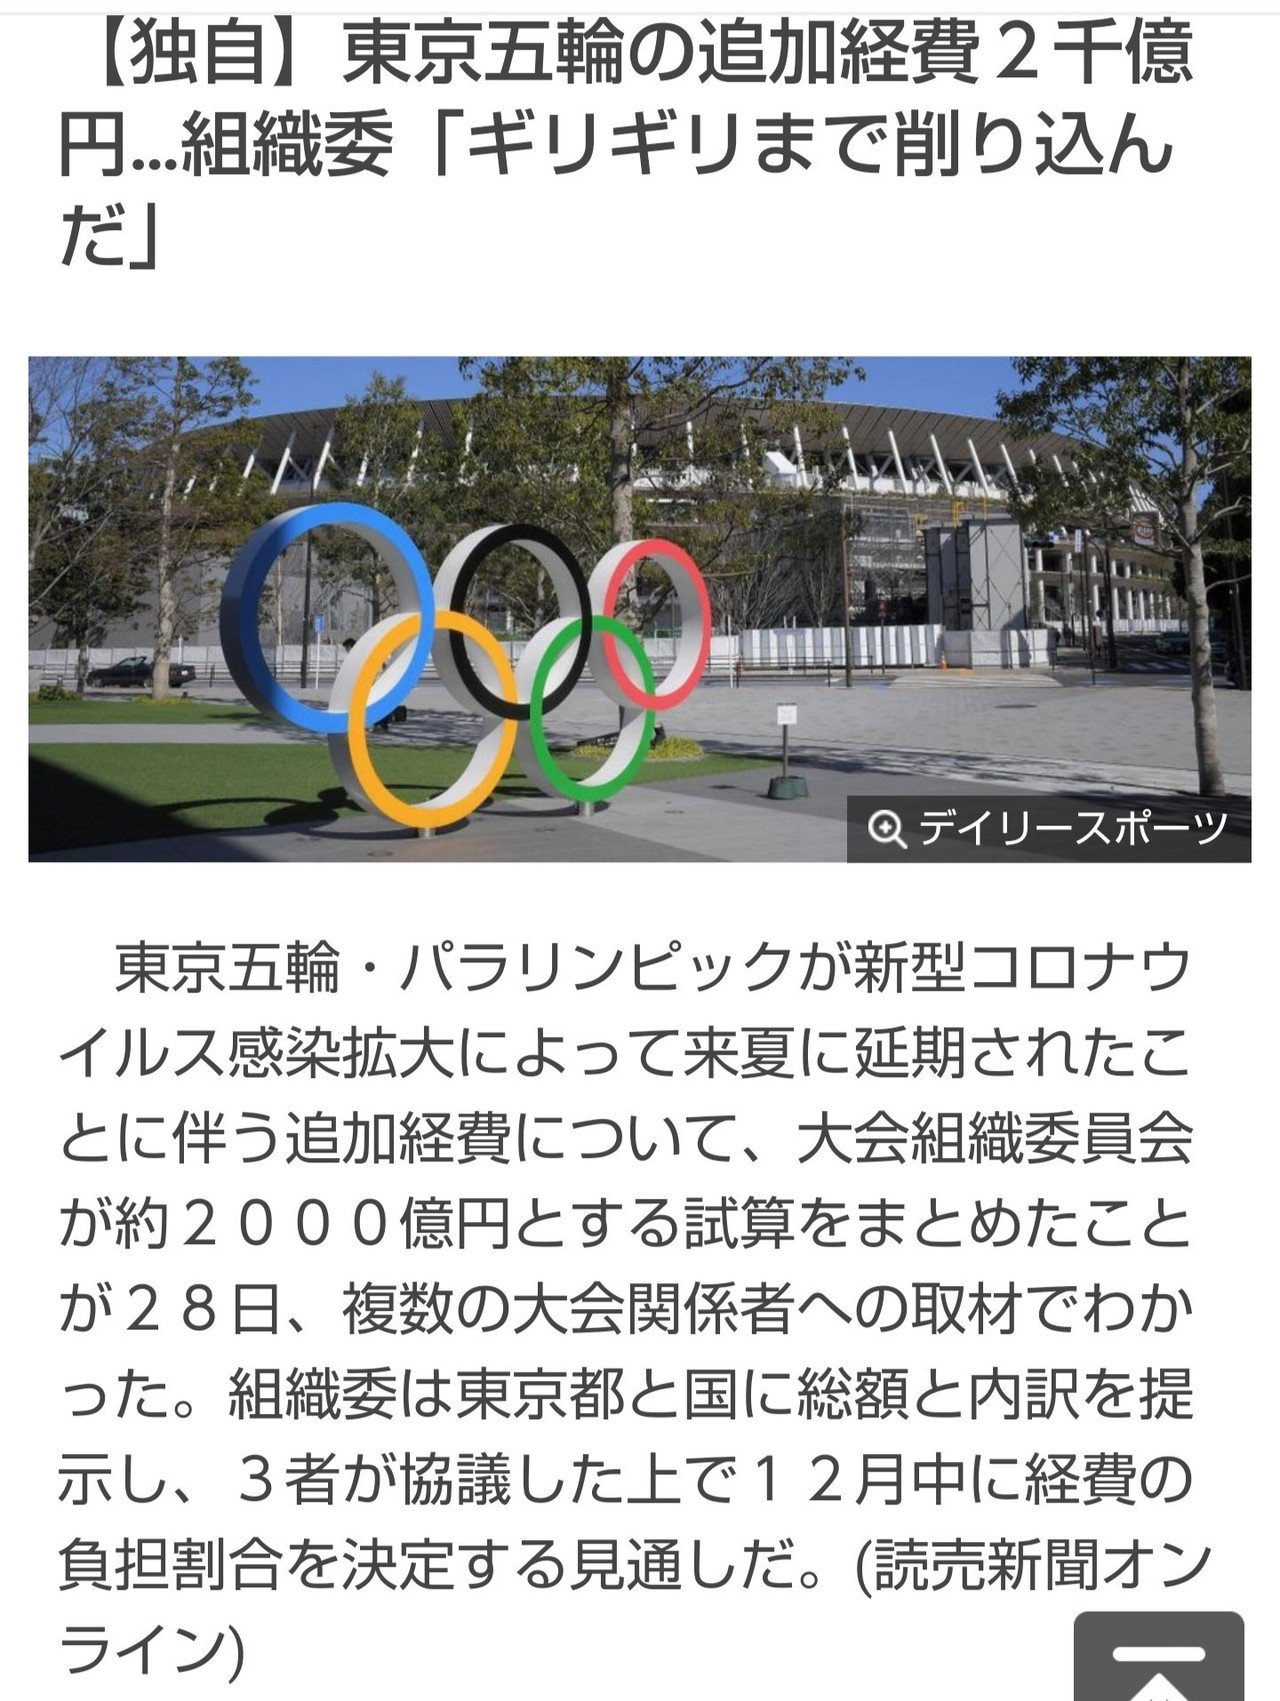 それにしてもさ 本当にやるのかね 東京オリンピック 東京パラリンピック 我としての気持ち的には こういう世界的な恒例なイベントはやる方が良いと思っ てるが 去年の2月から現実的に考えたら中止だろうと Heart Break Sammy Note